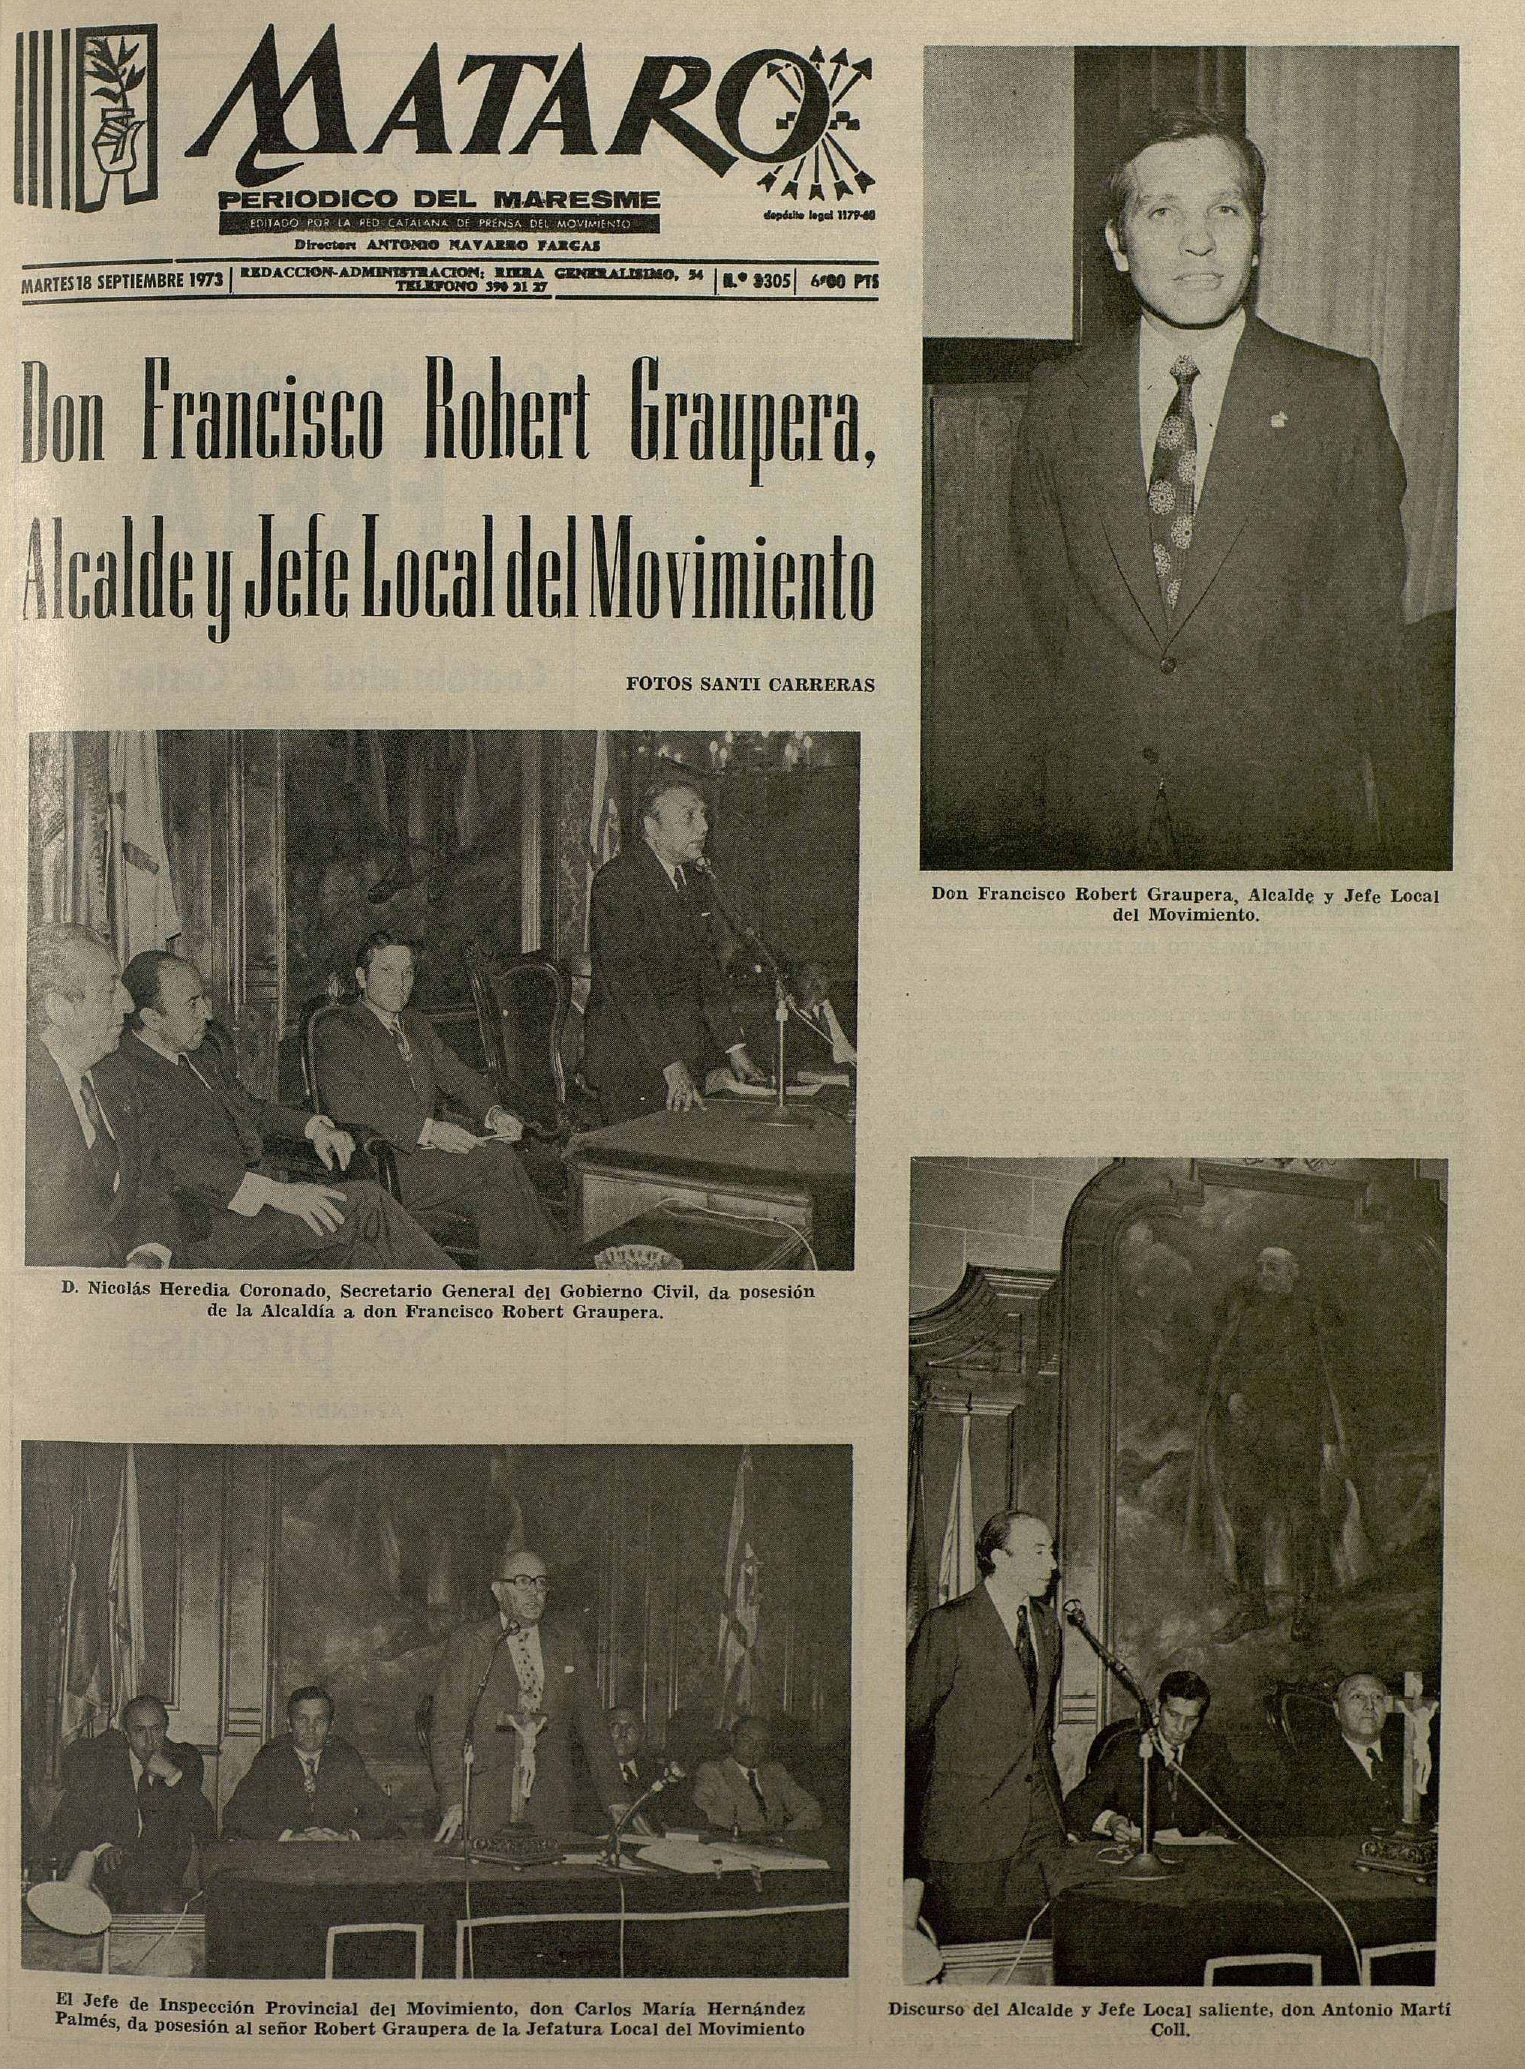 ortada del diari “Mataró” del 18 de setembre de 1973, en què es feia ressò del nomenament de Francesc Robert Graupera com a nou alcalde de Mataró i cap local del Movimiento